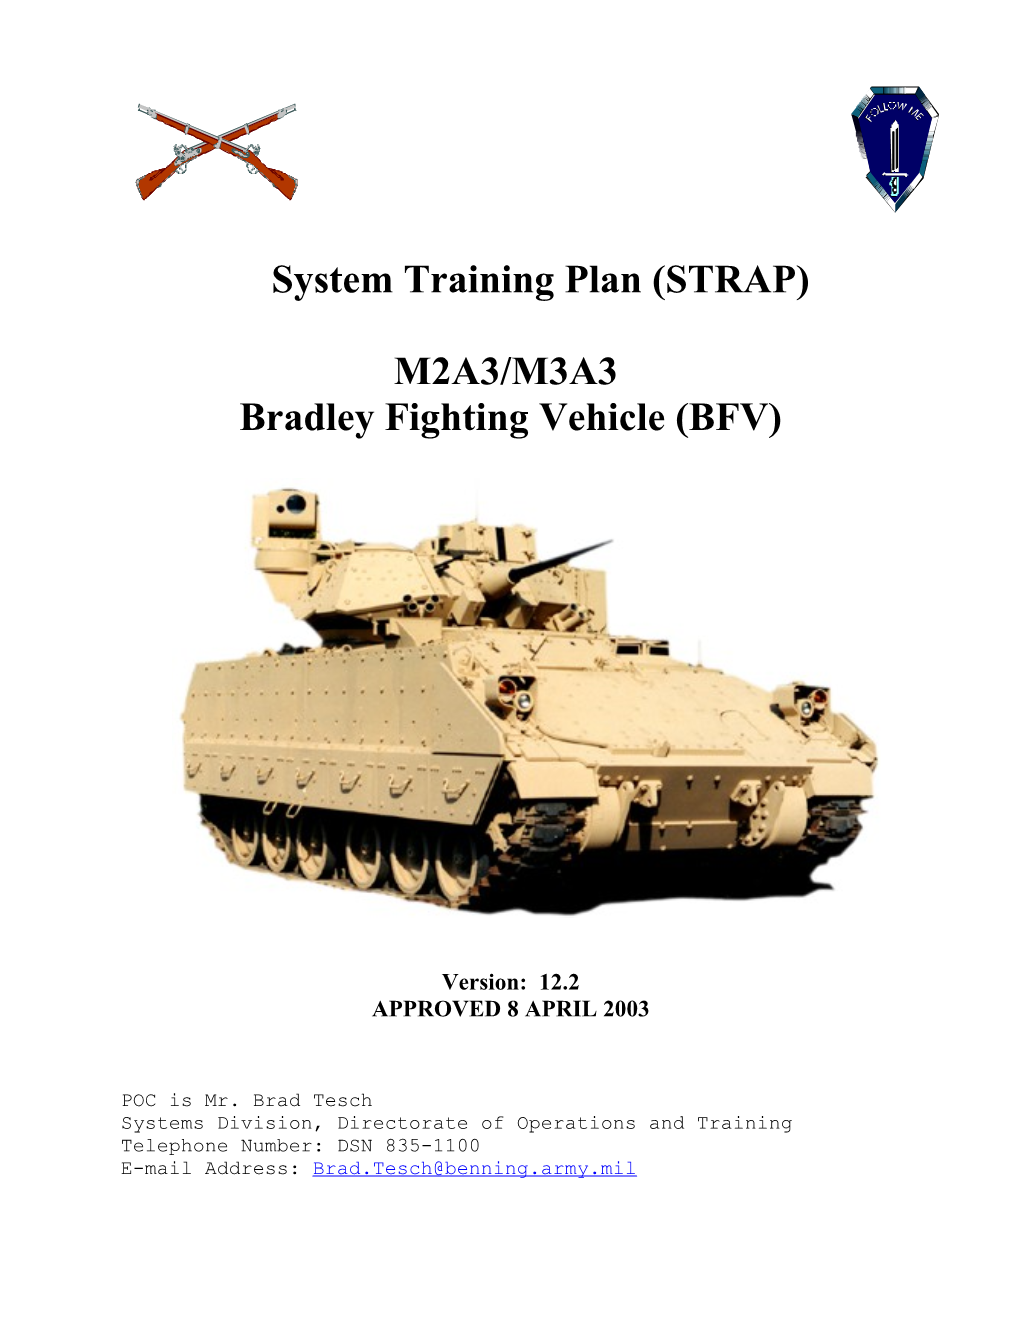 Bradley Fighting Vehicle (BFV)